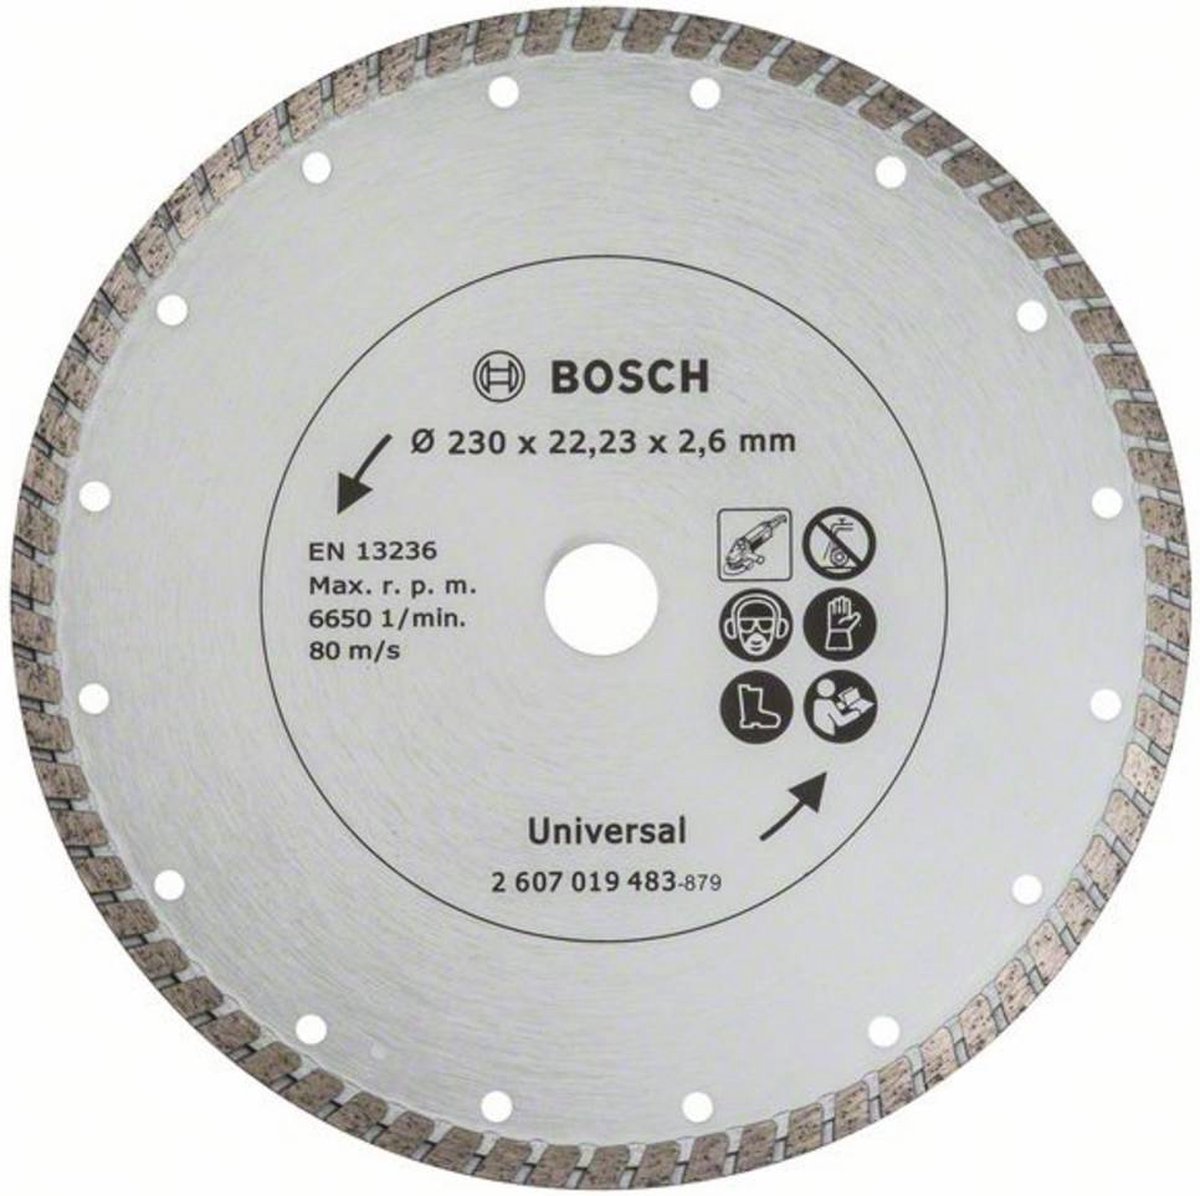 Bosch Diamantdoorslijpschijf Turbo, 230 mm Ø